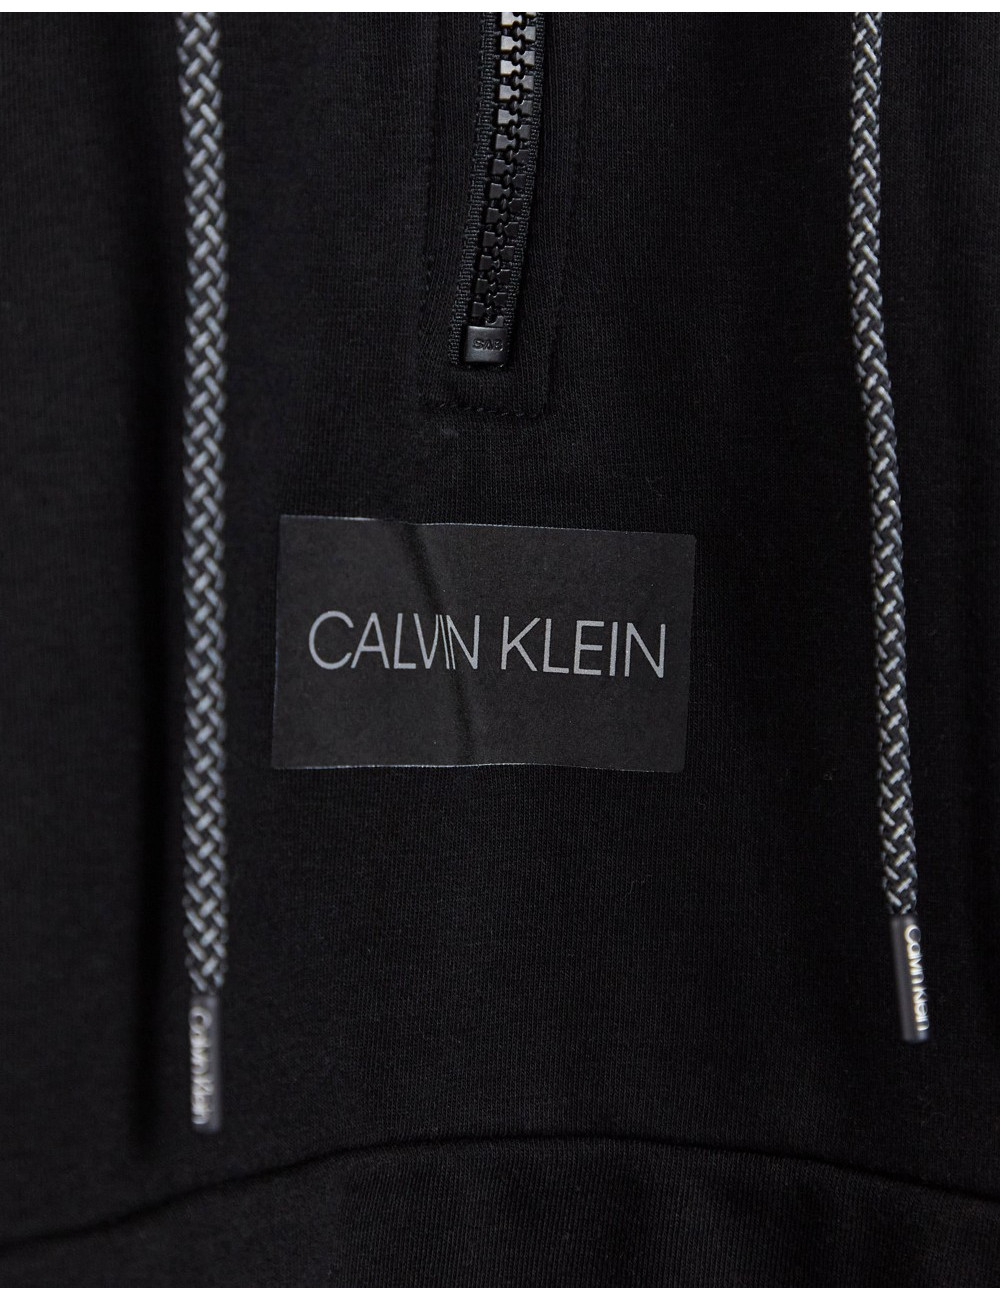 Calvin Klein reflective...